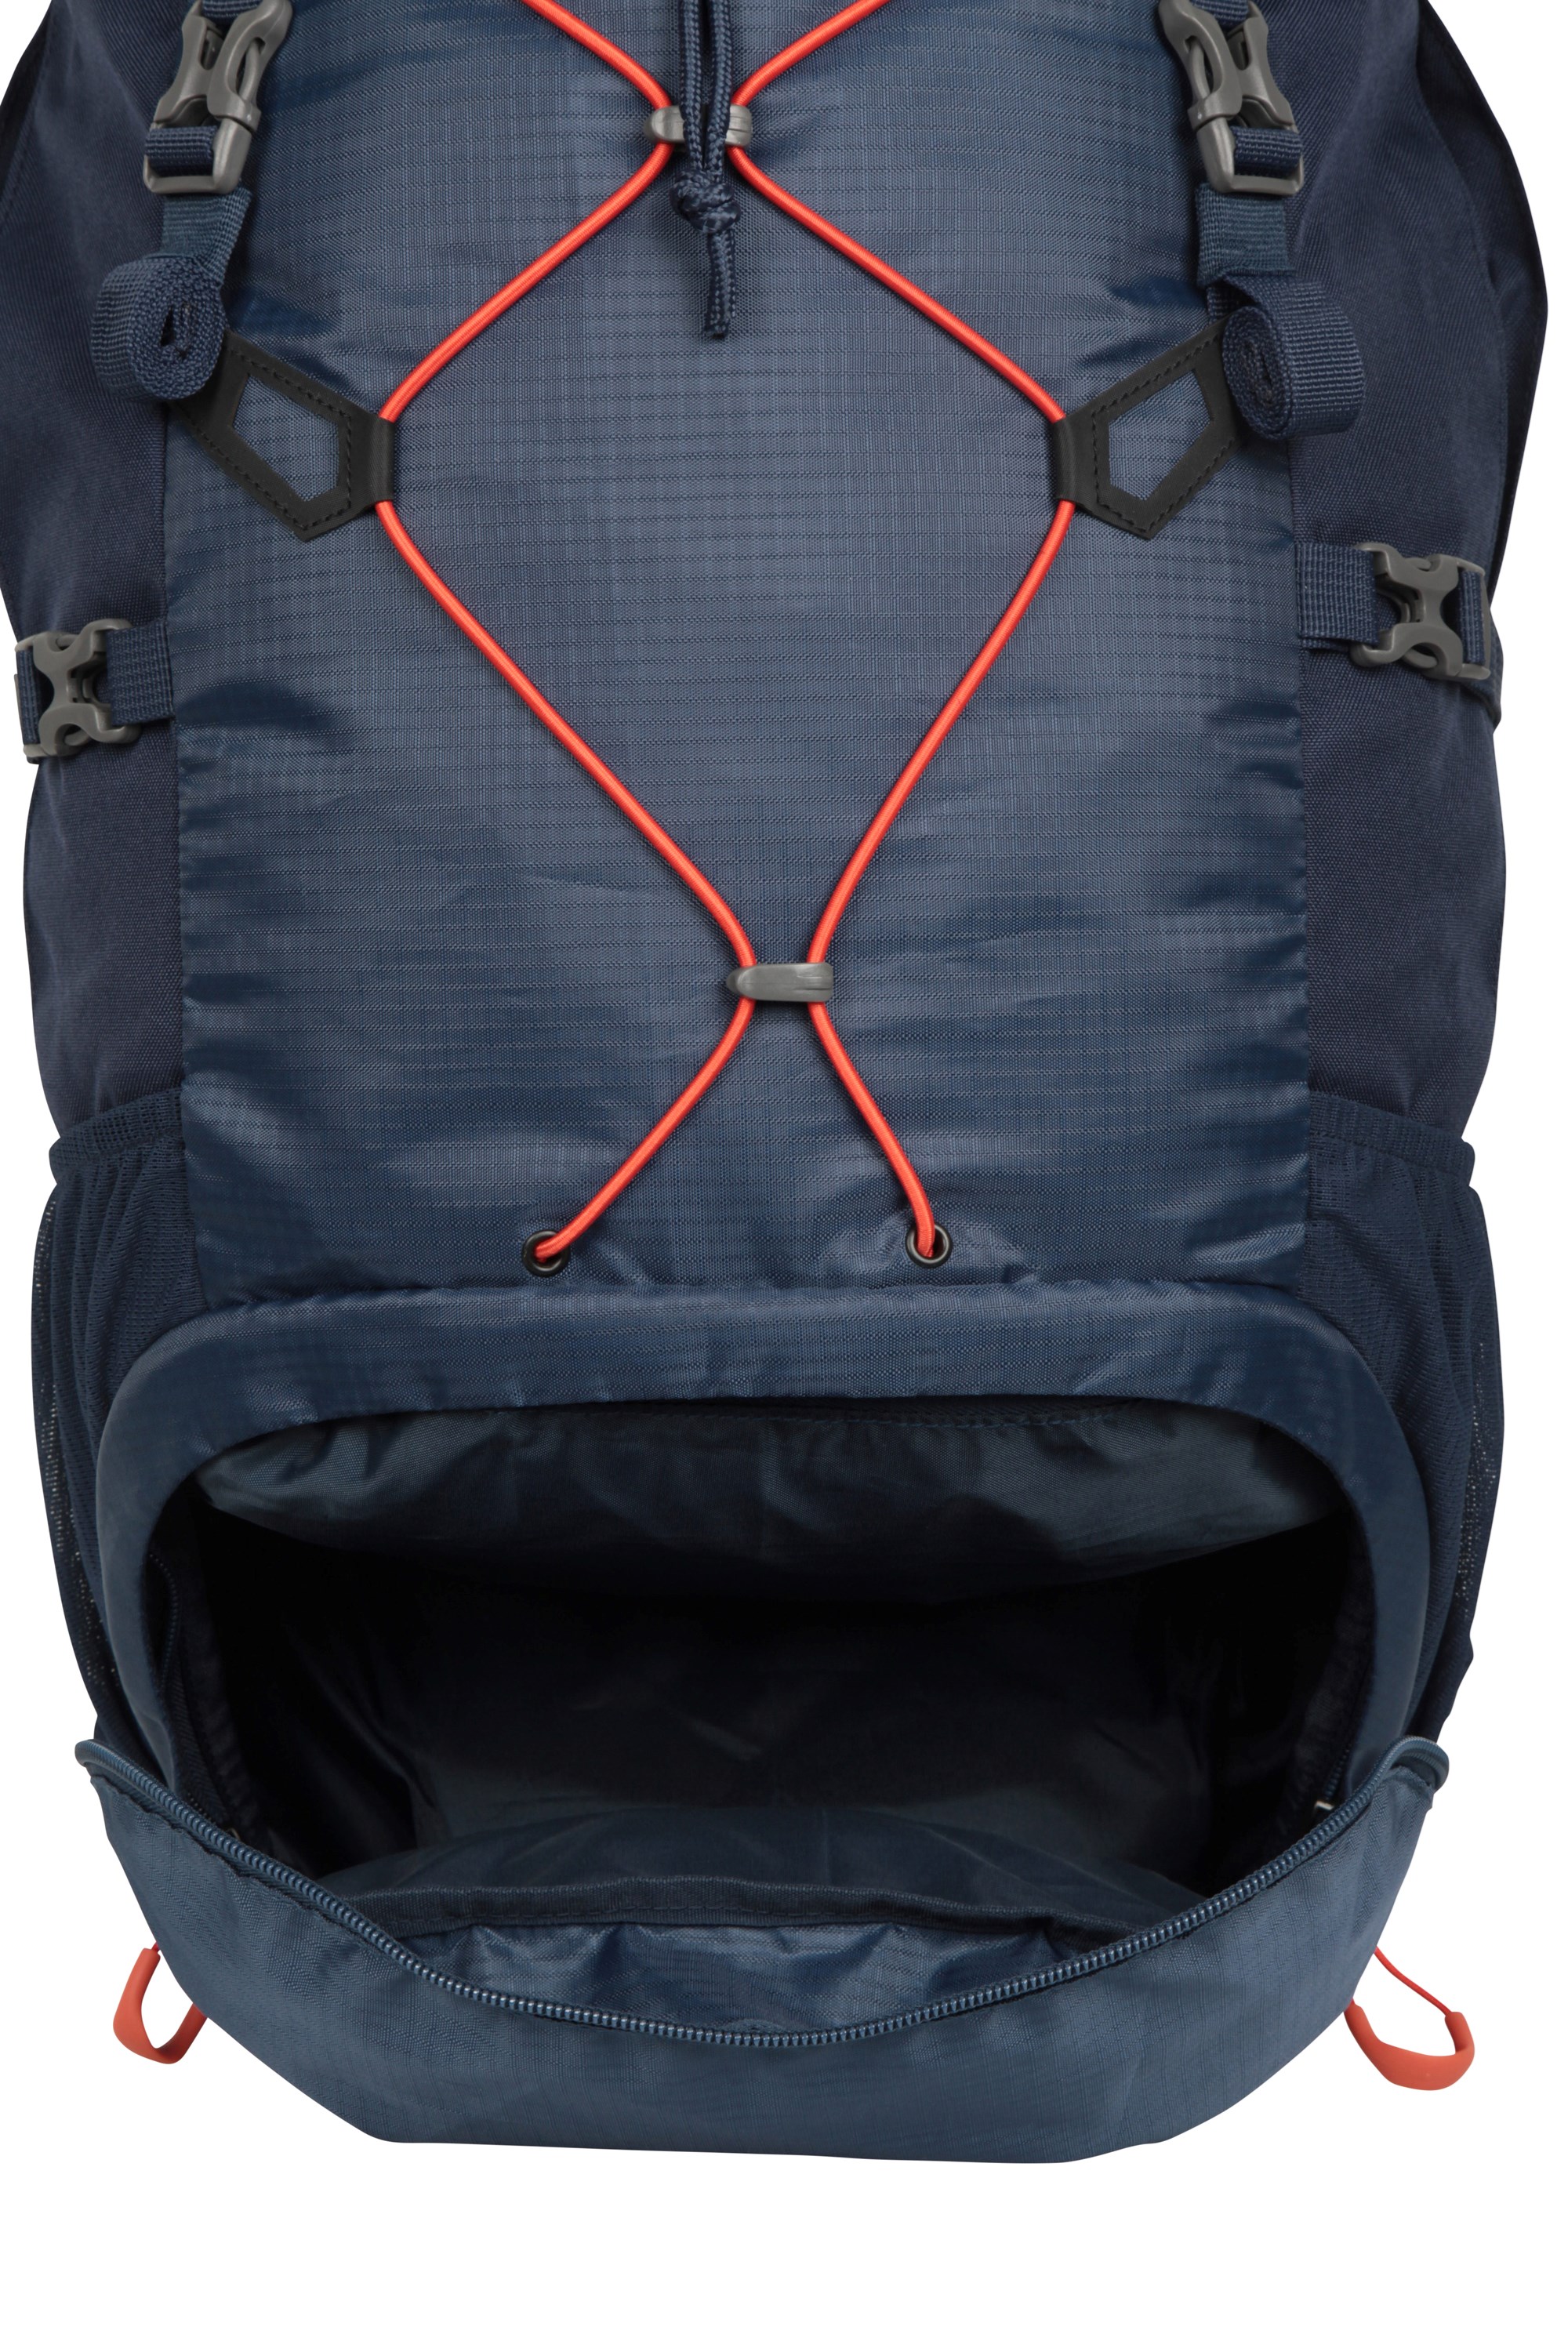 Highland 40L Backpack